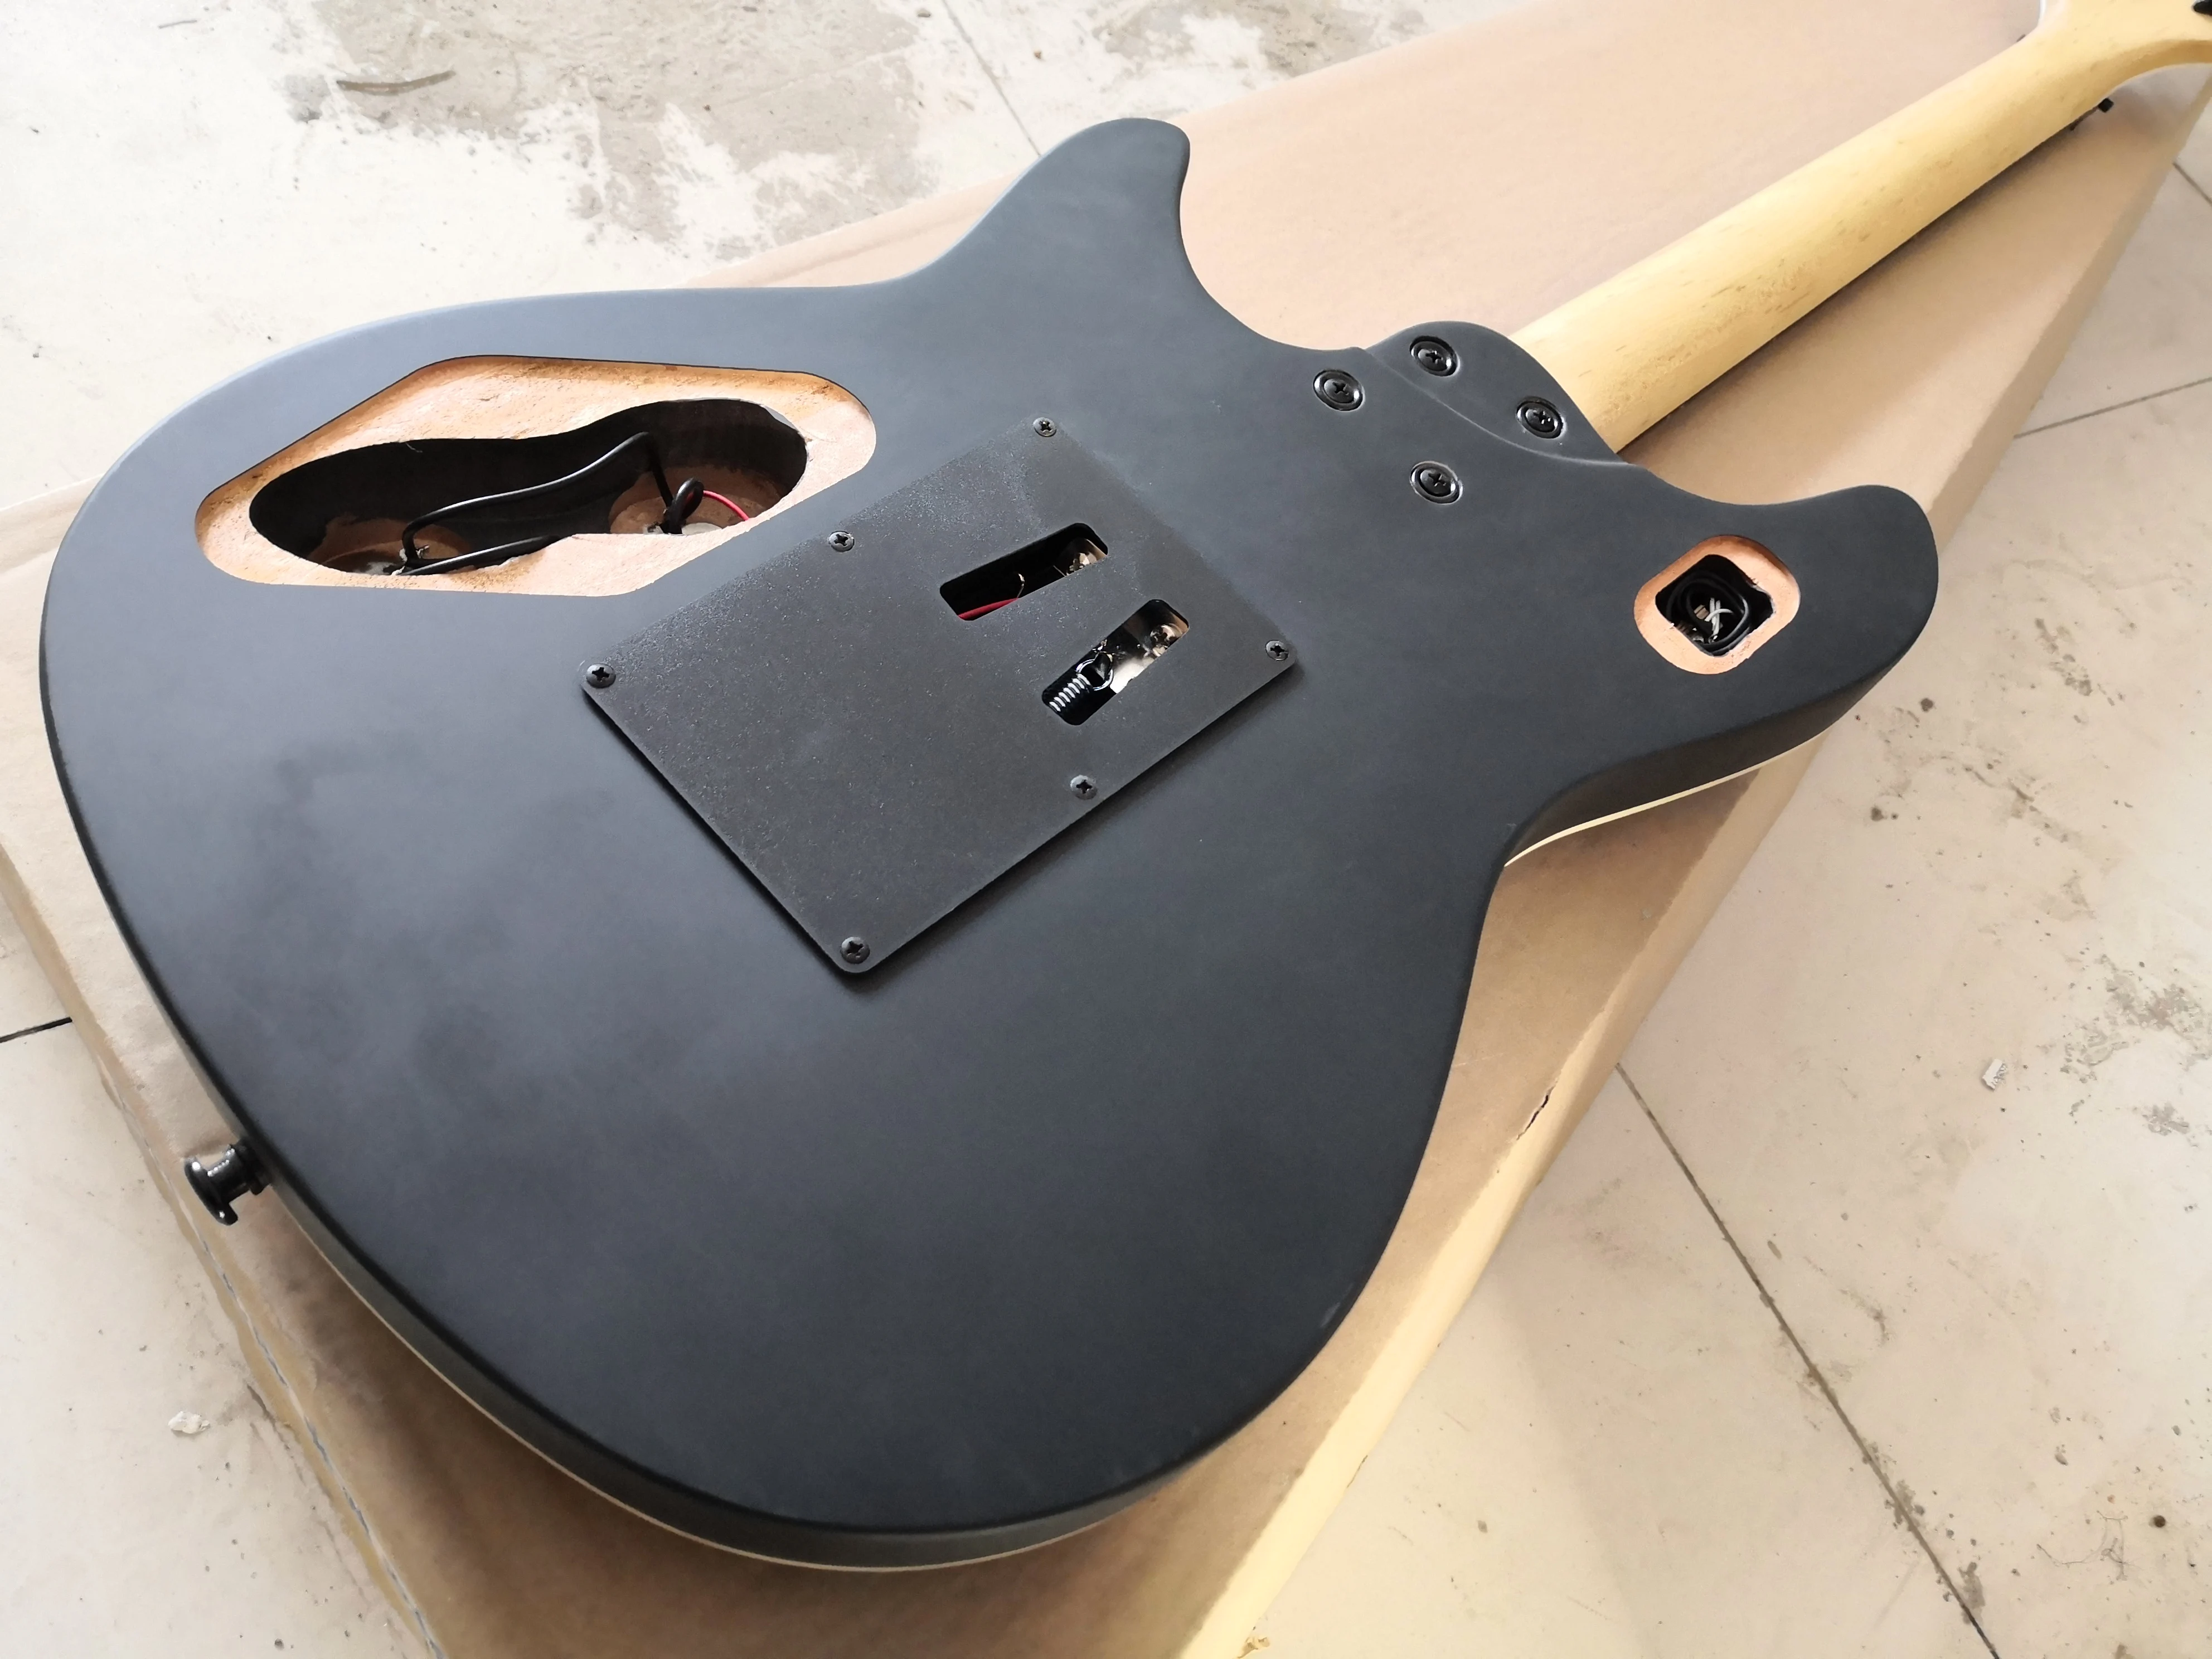 Пользовательская 6-струнная гитара, черная гитара, корпус из липы, Кленовая шея, мост тремоло, белый черный пикап, черная кнопка,